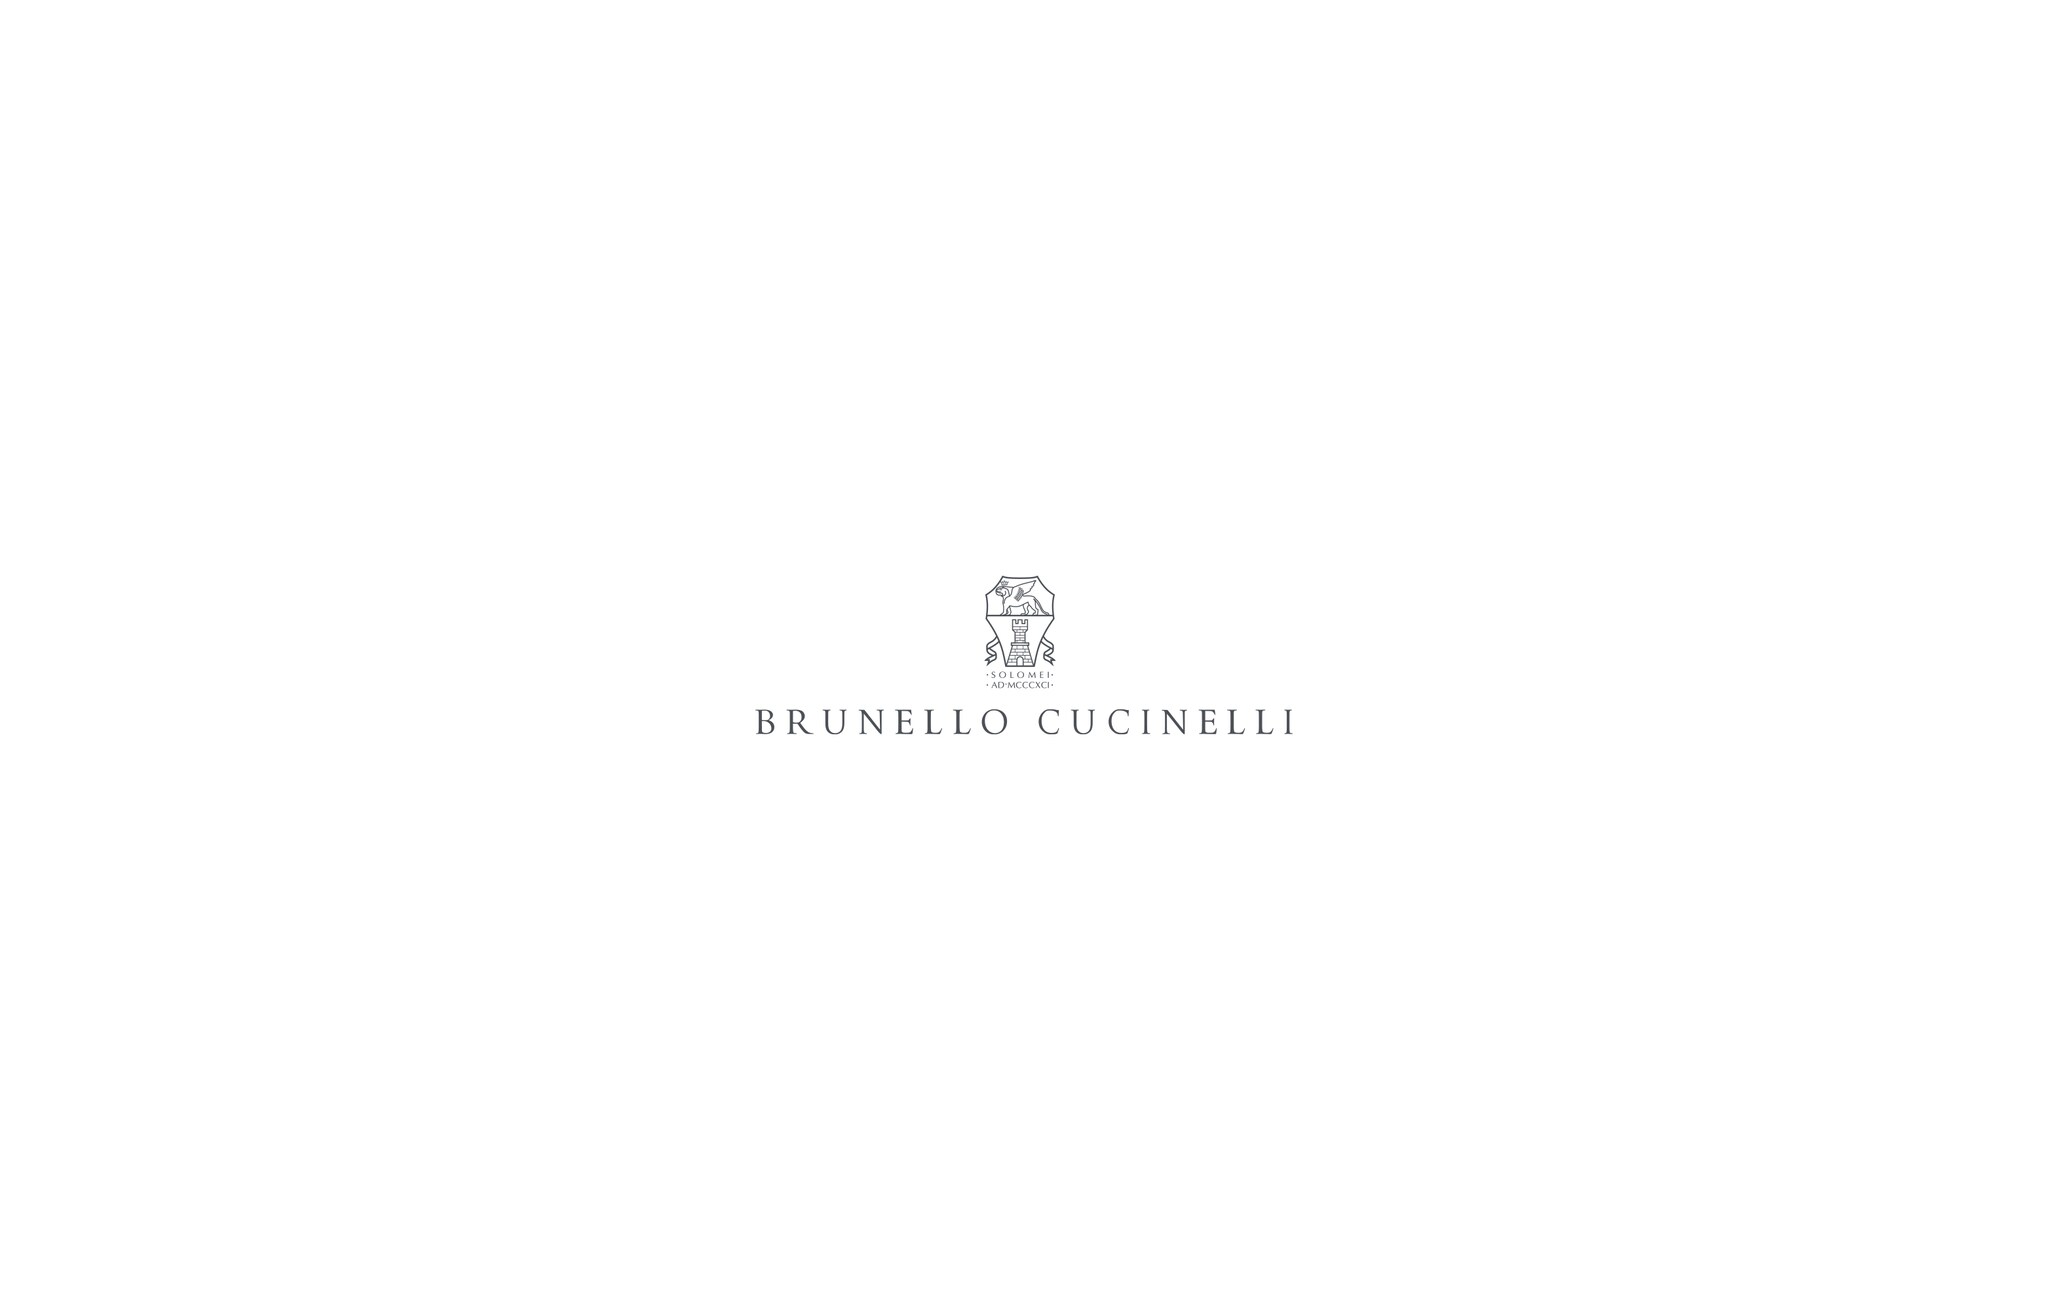  スウェットトラウザーズ オフホワイト ボーイズ - Brunello Cucinelli 